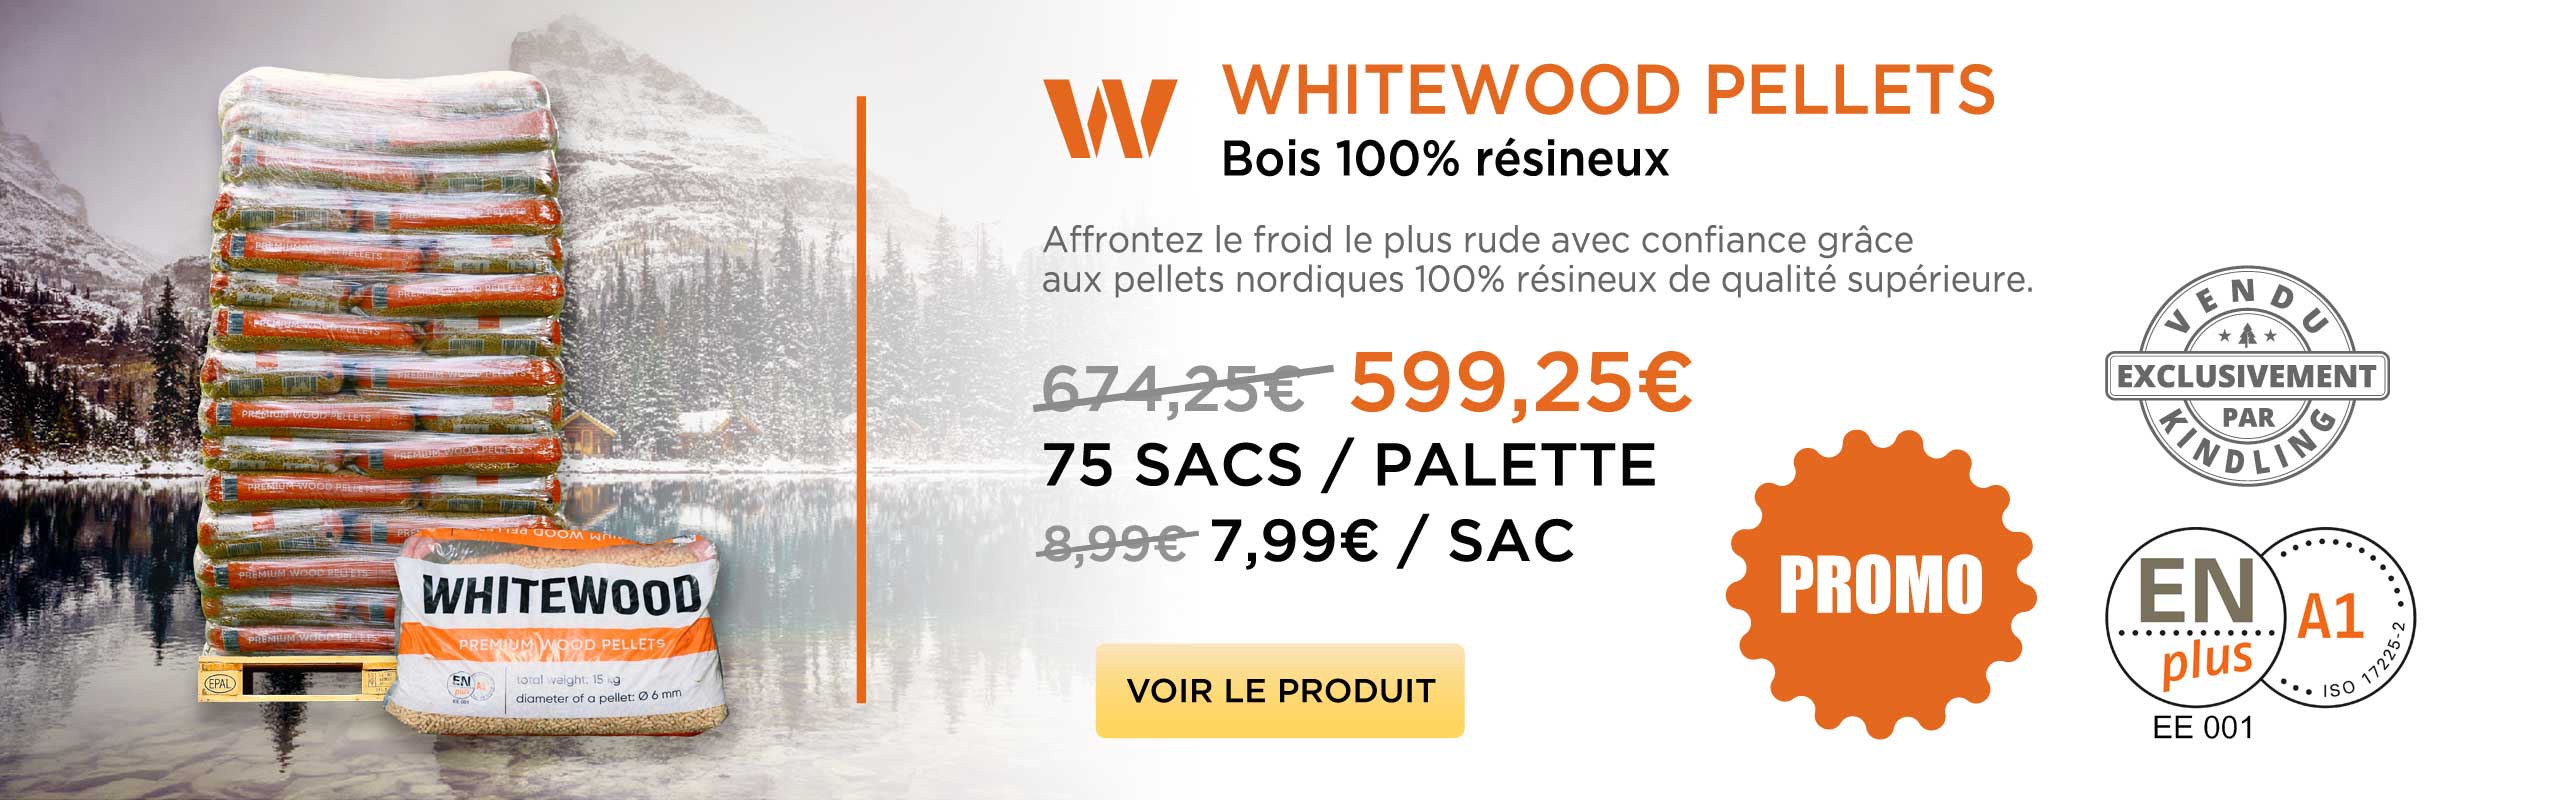 whitewood-pellets-promo-slide